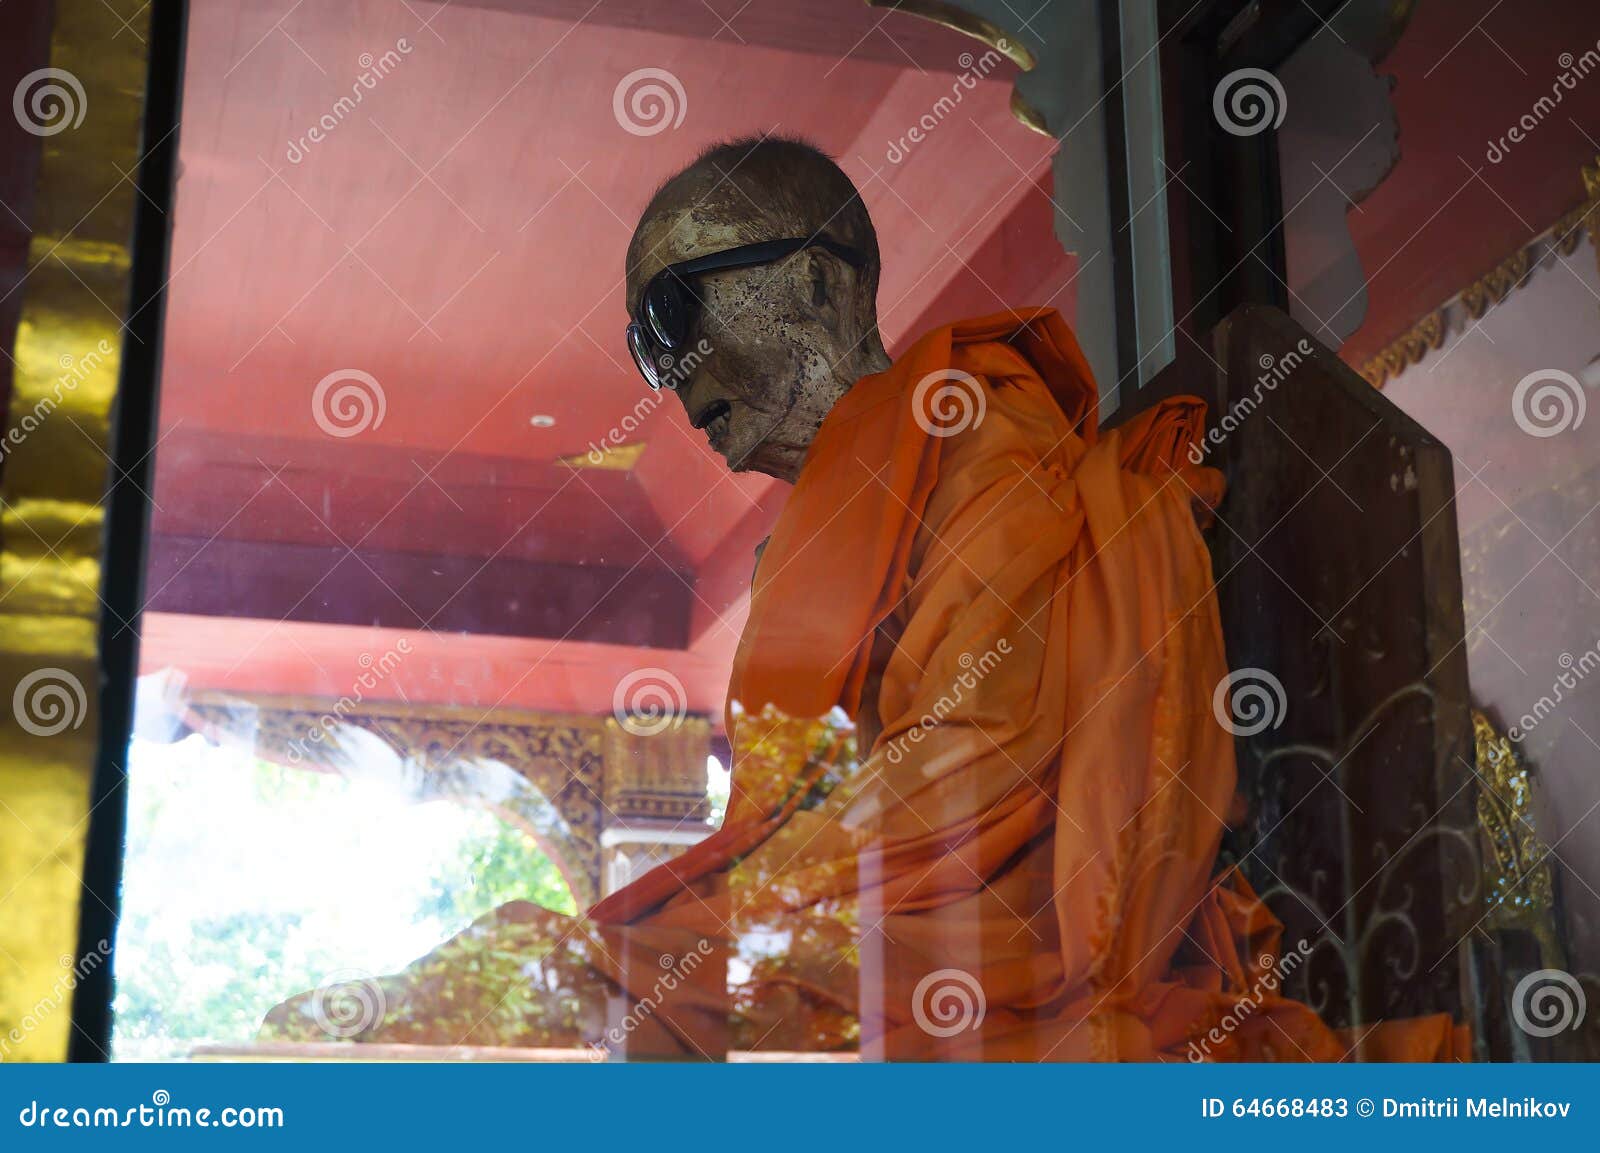 mummy of a buddhist monk